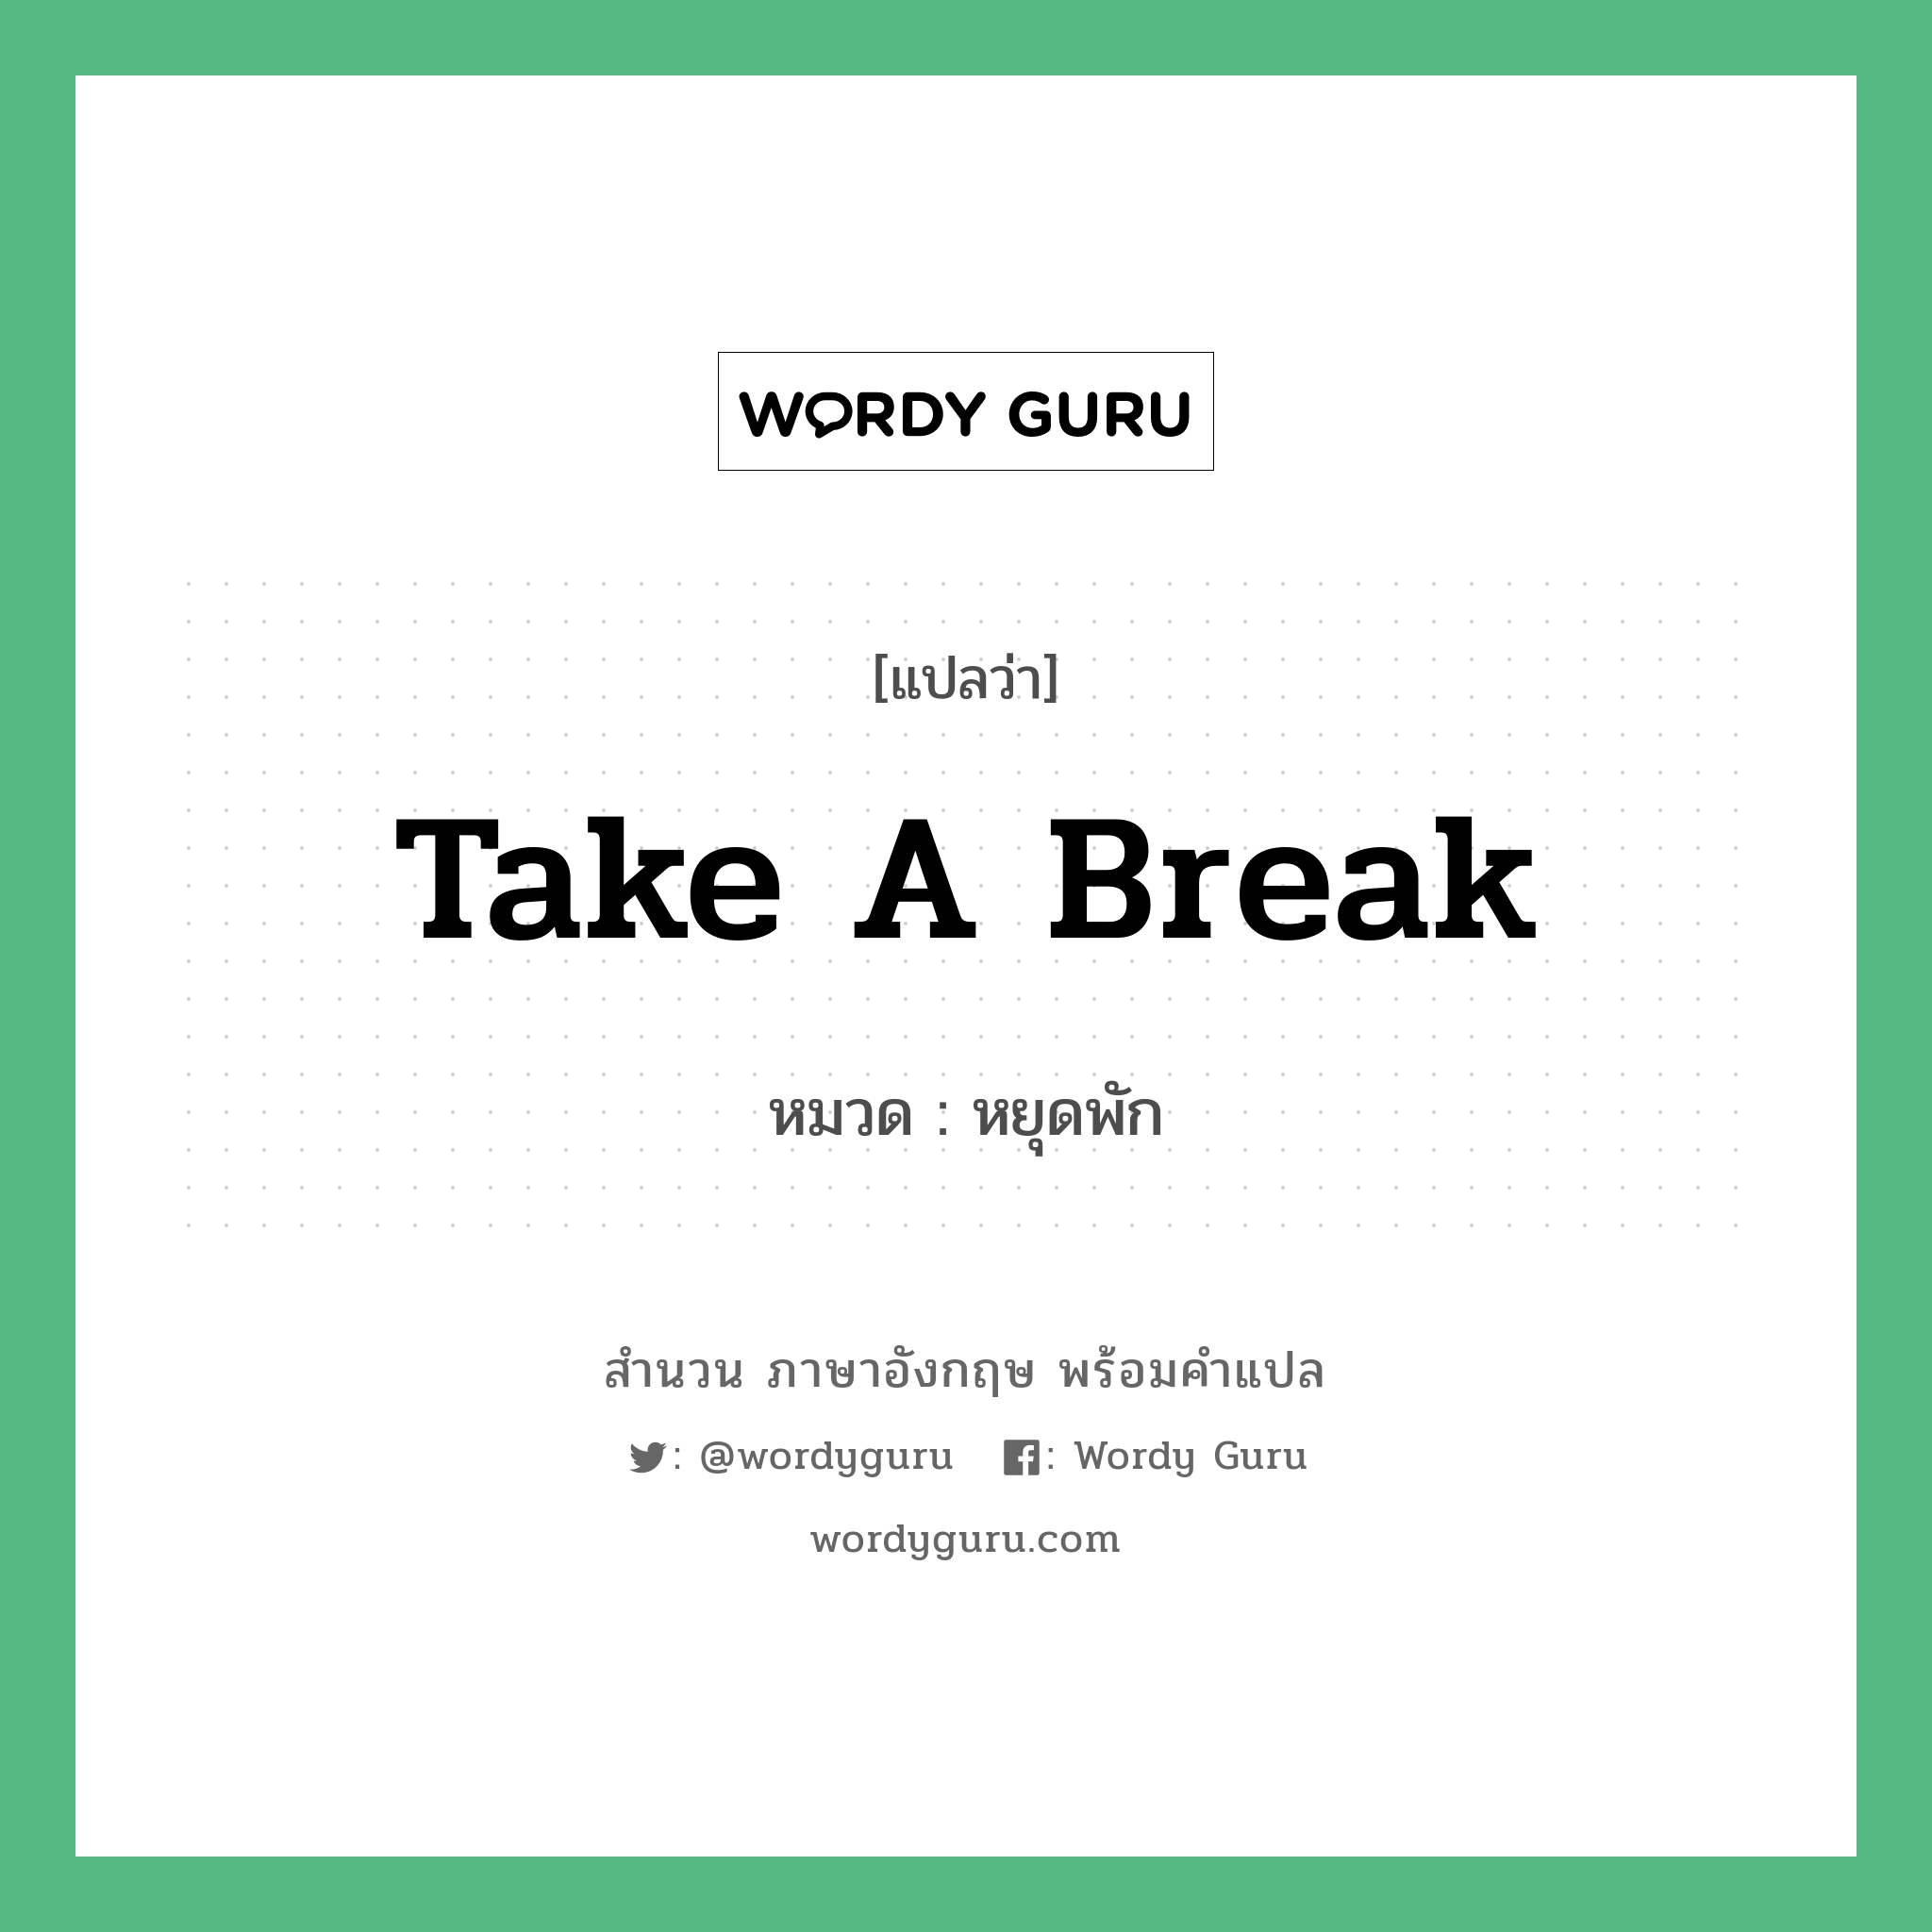 Take a break แปลว่า?, สำนวนภาษาอังกฤษ Take a break หมวด หยุดพัก